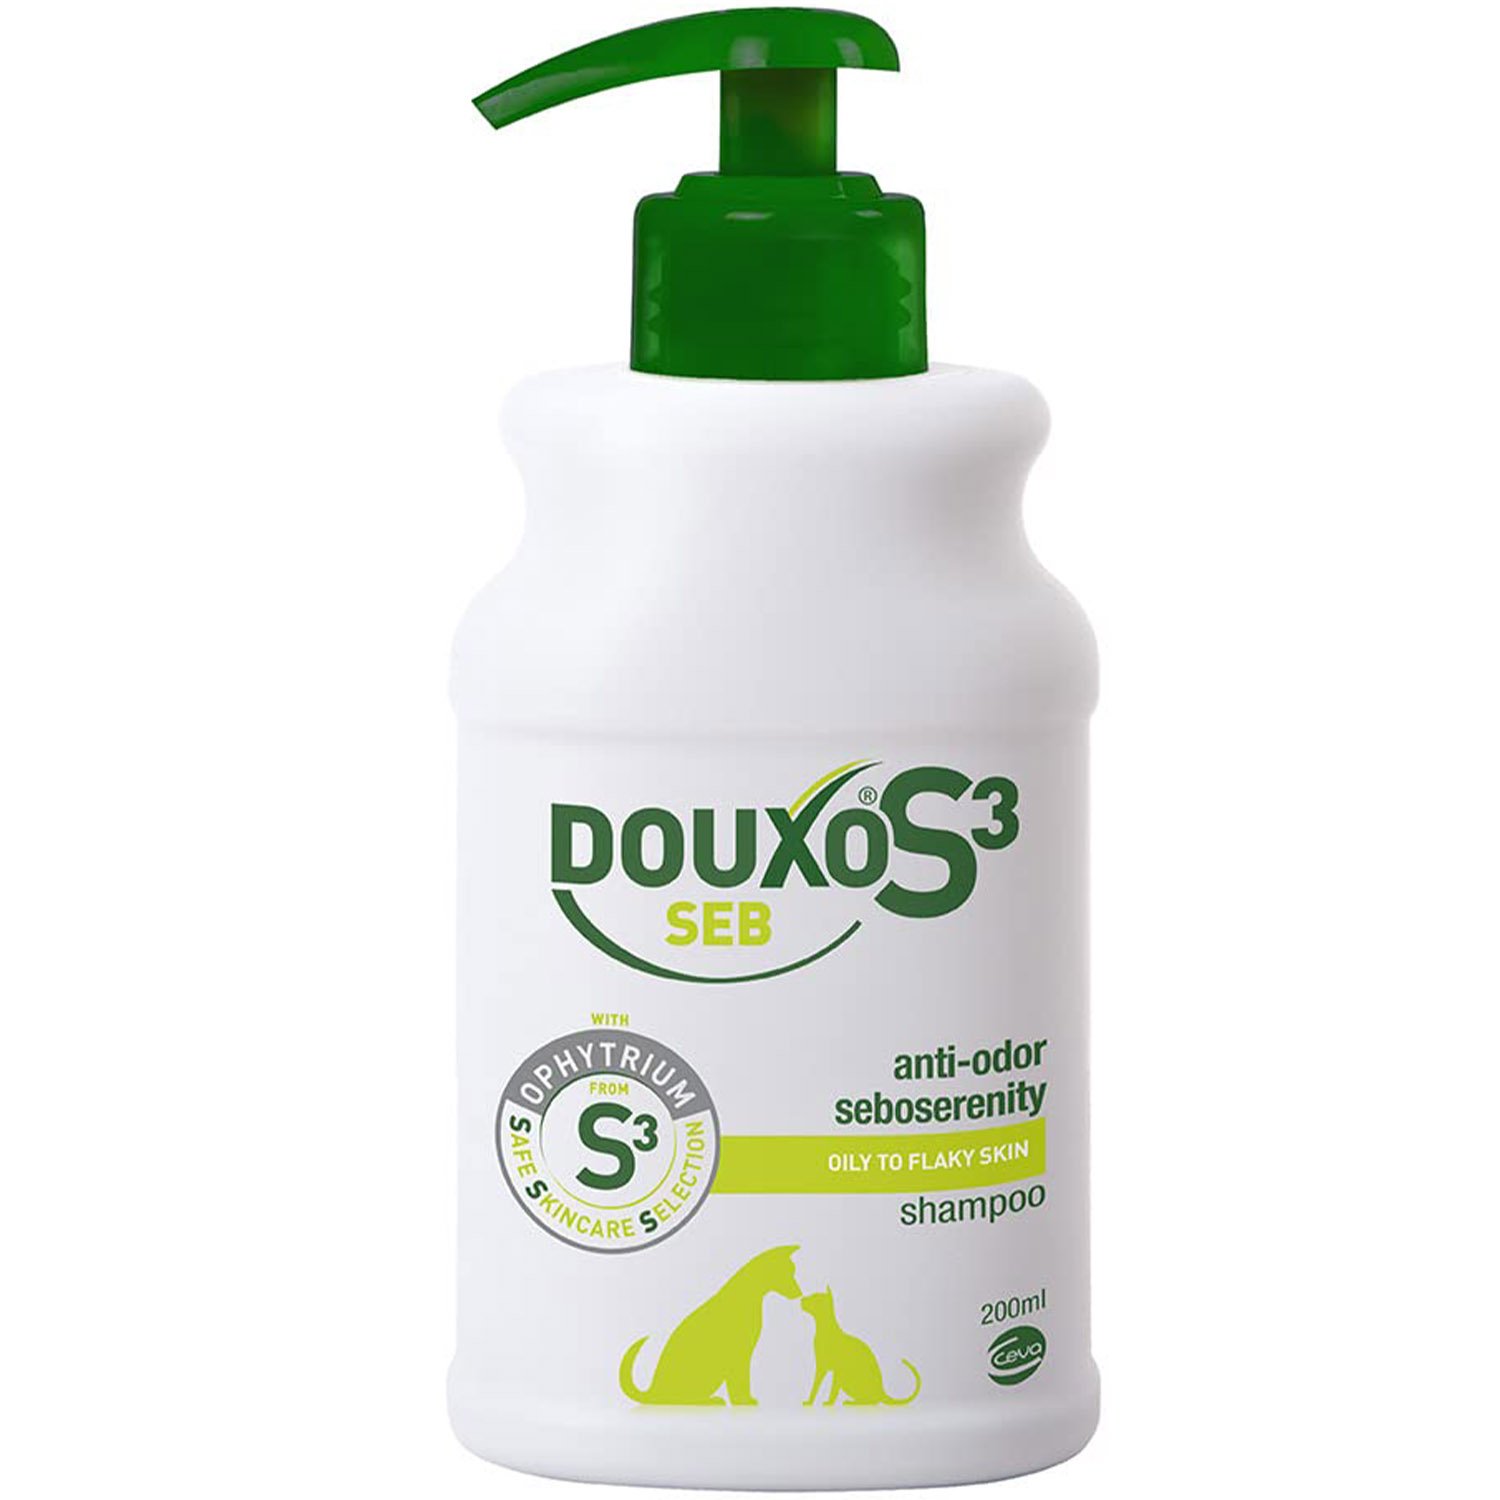 Photos - Baby Hygiene Ceva Лікувальний шампунь Douxo S3 Seb для жирної шкіри собак та котів себорегул 